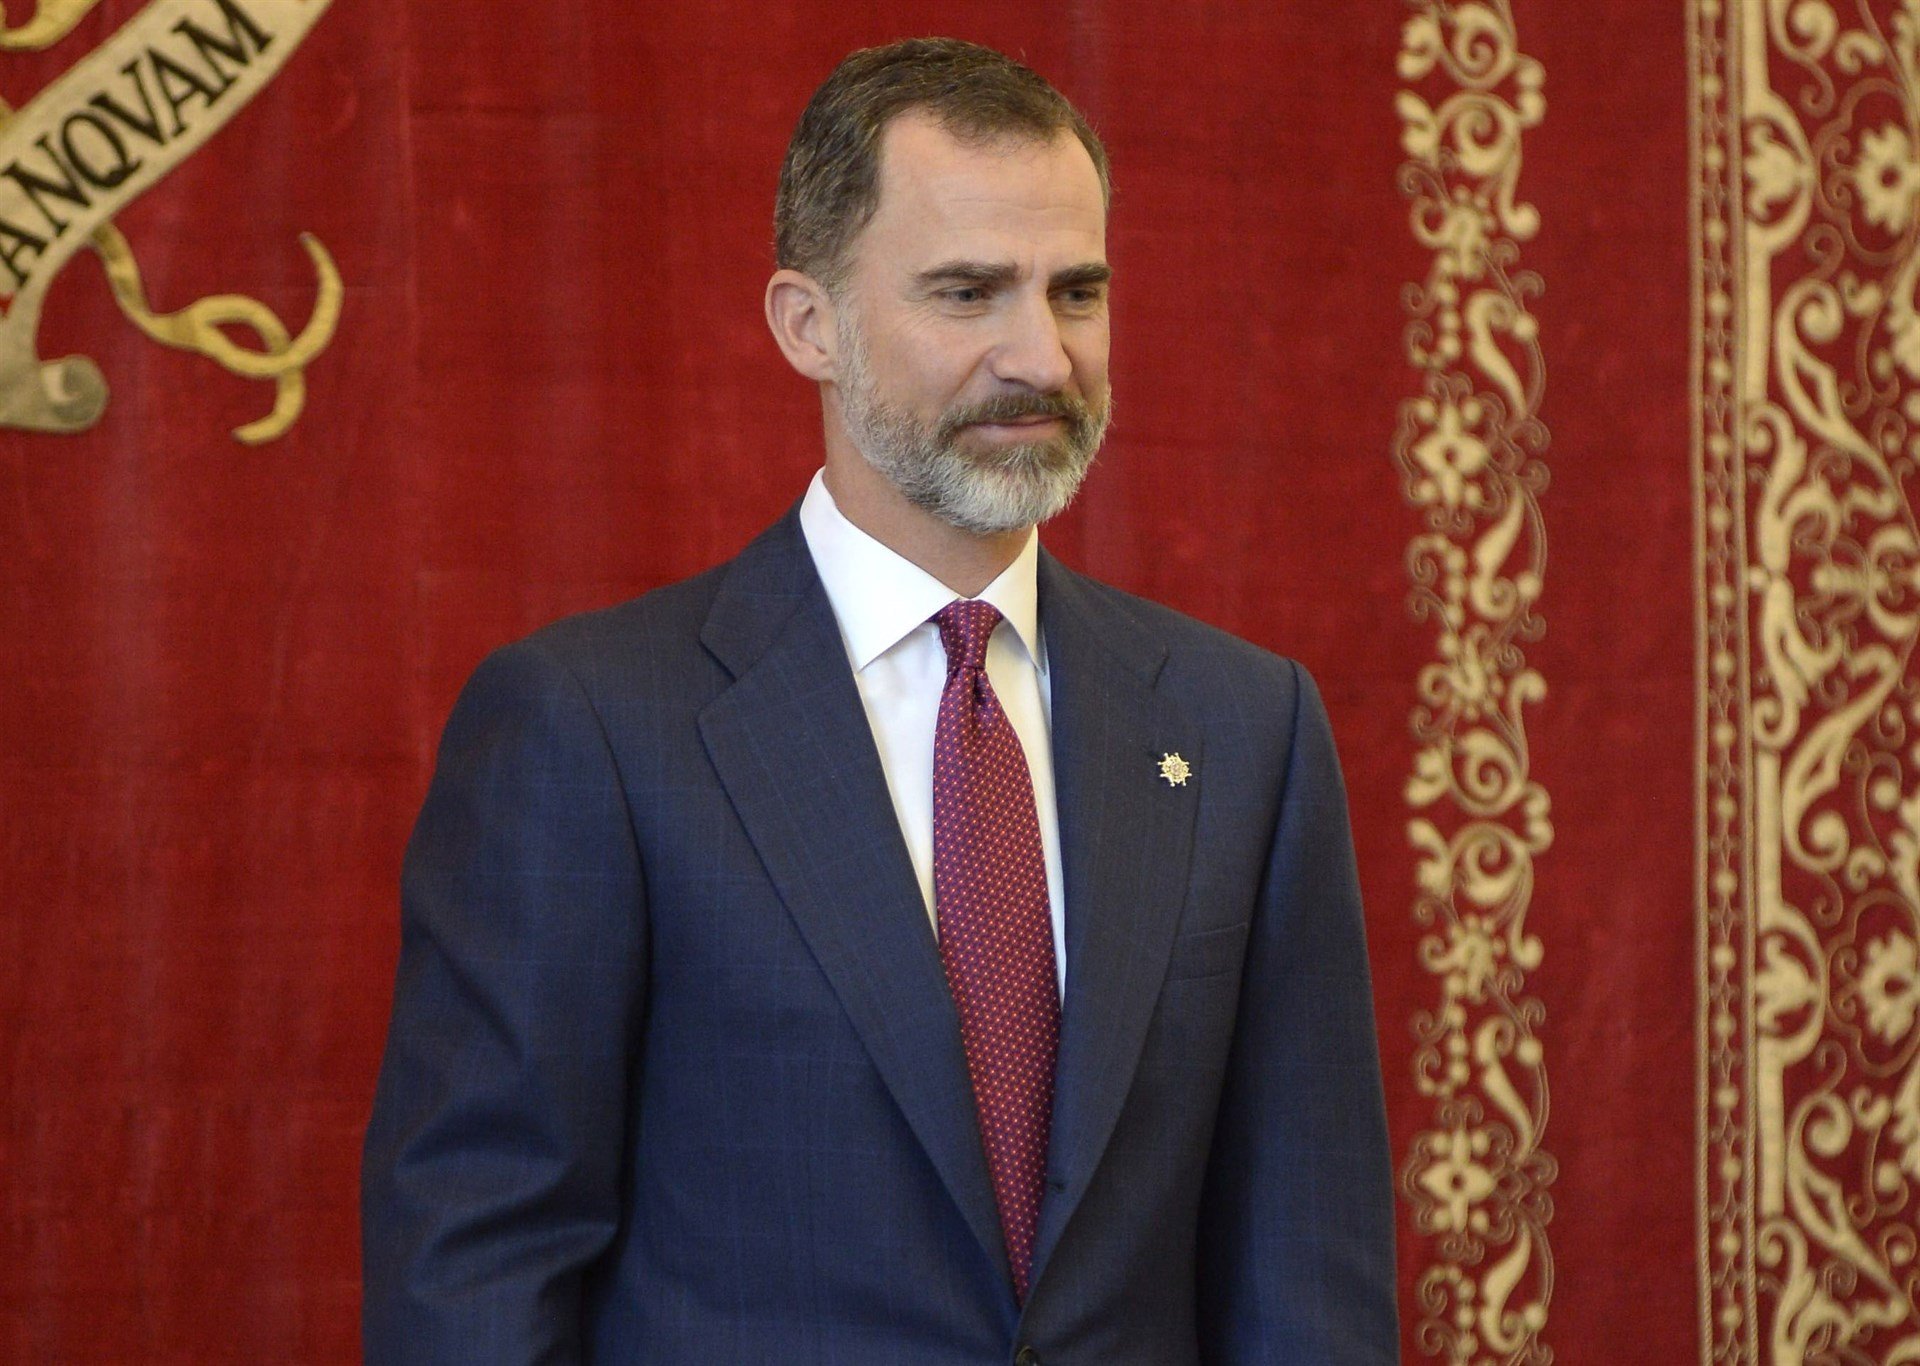 El discurso del Rey: 15 veces 'España' y 'españoles' en sólo 5 minutos